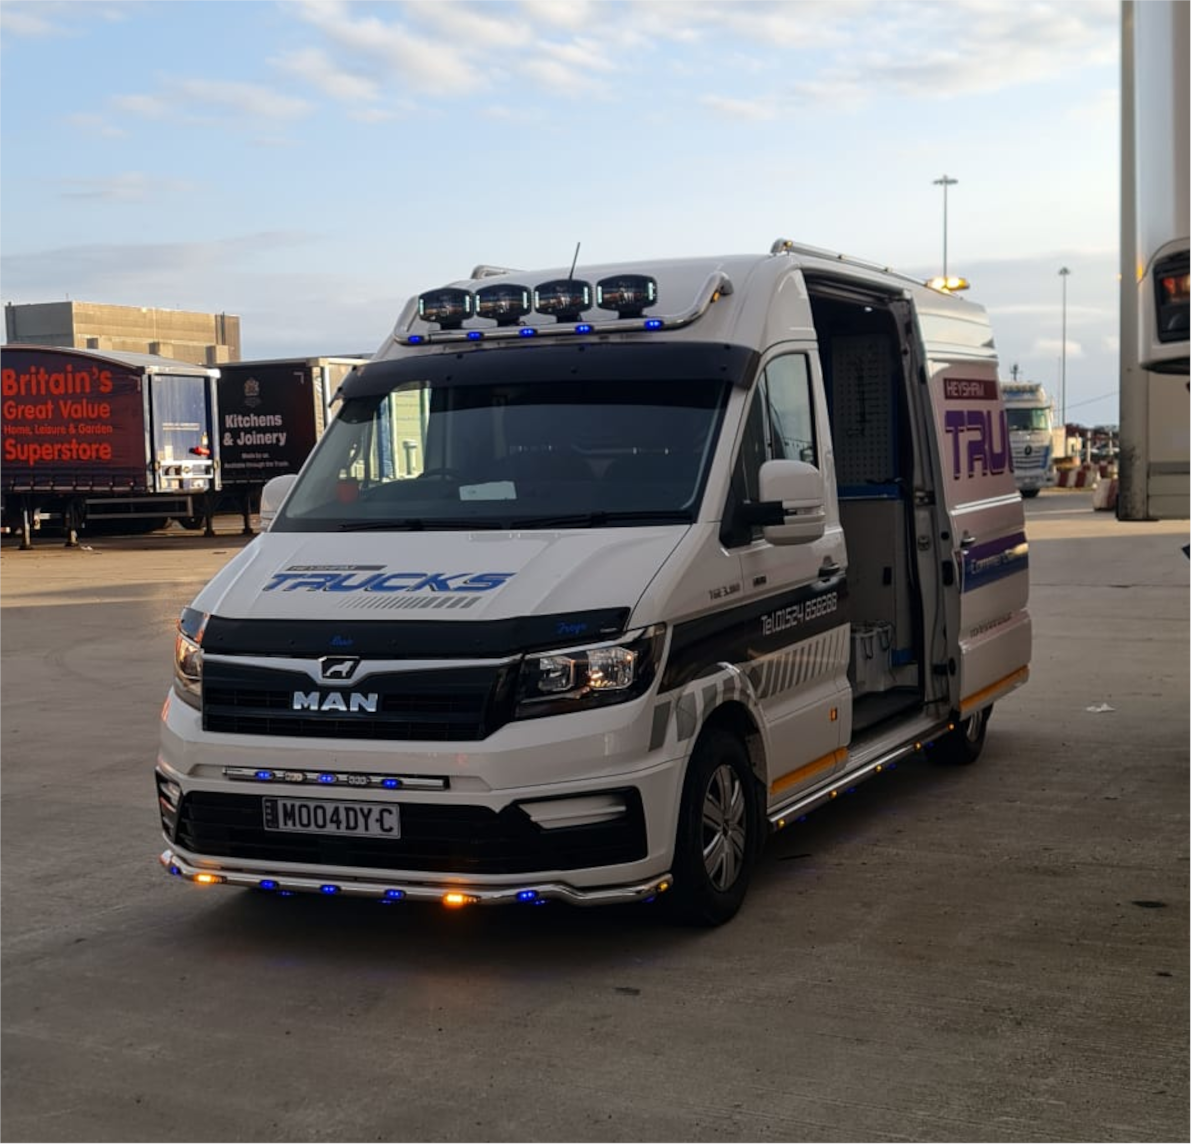 Heysham Trucks Van | Portside Commercial Vehicle Inspection